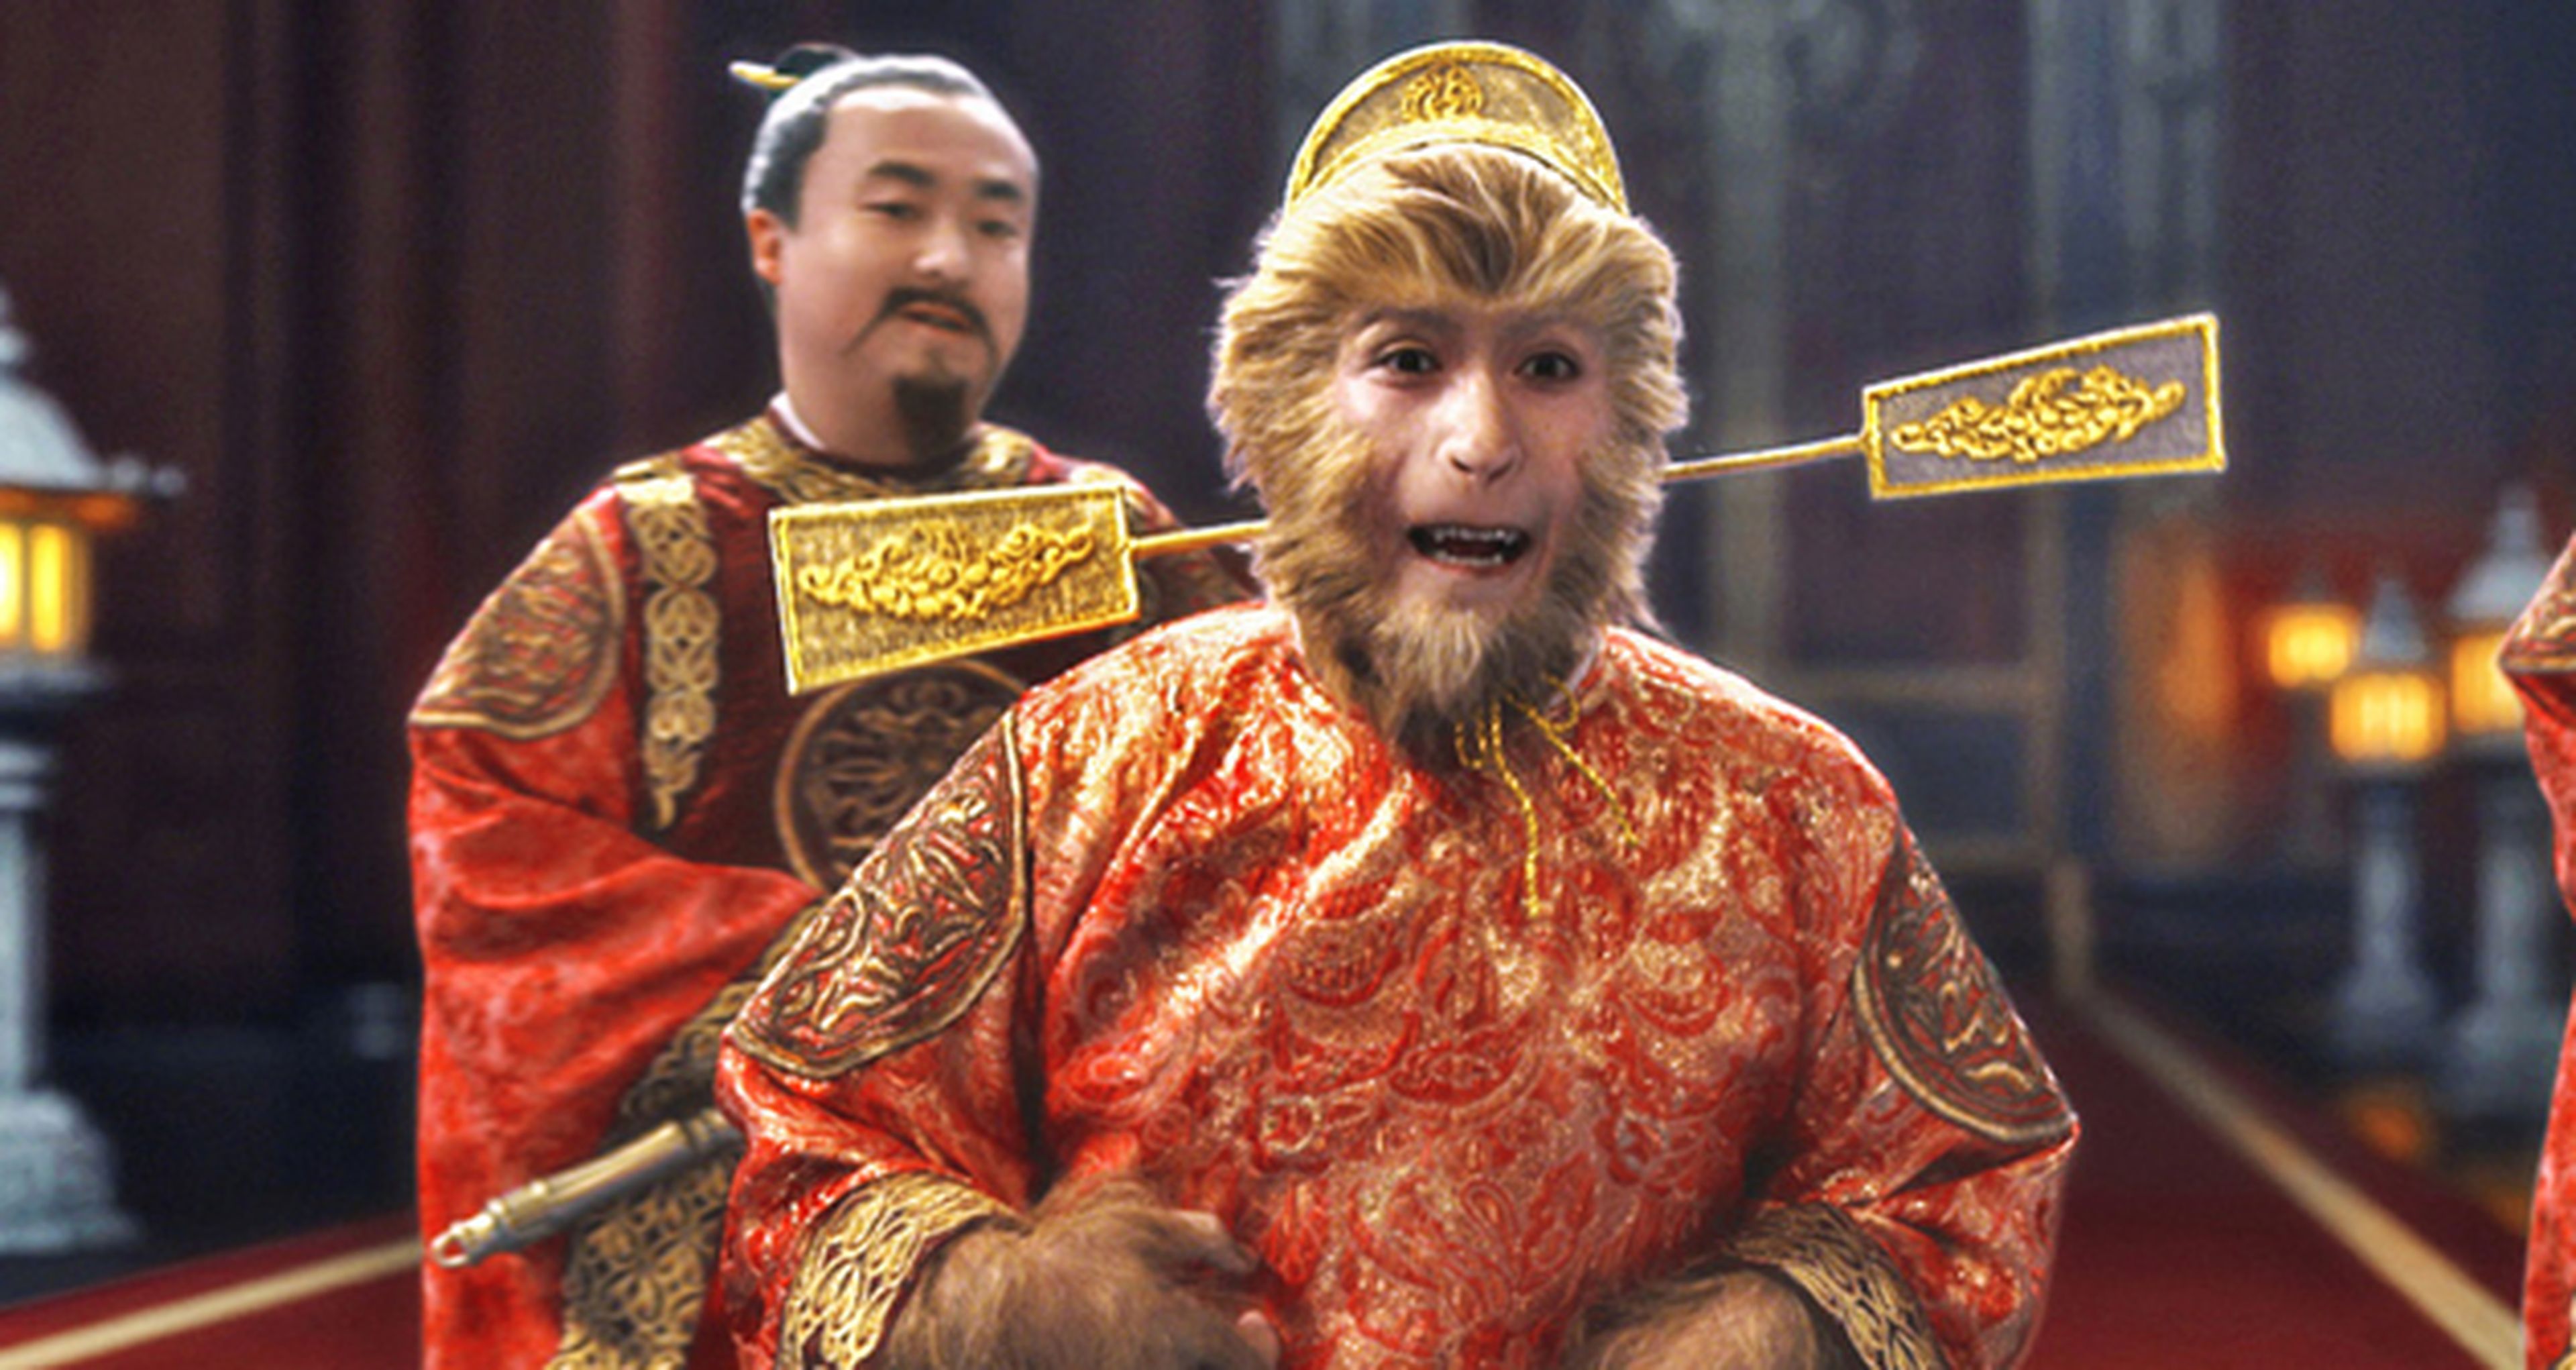 Nuevo tráiler de The Monkey King con Donnie Yen